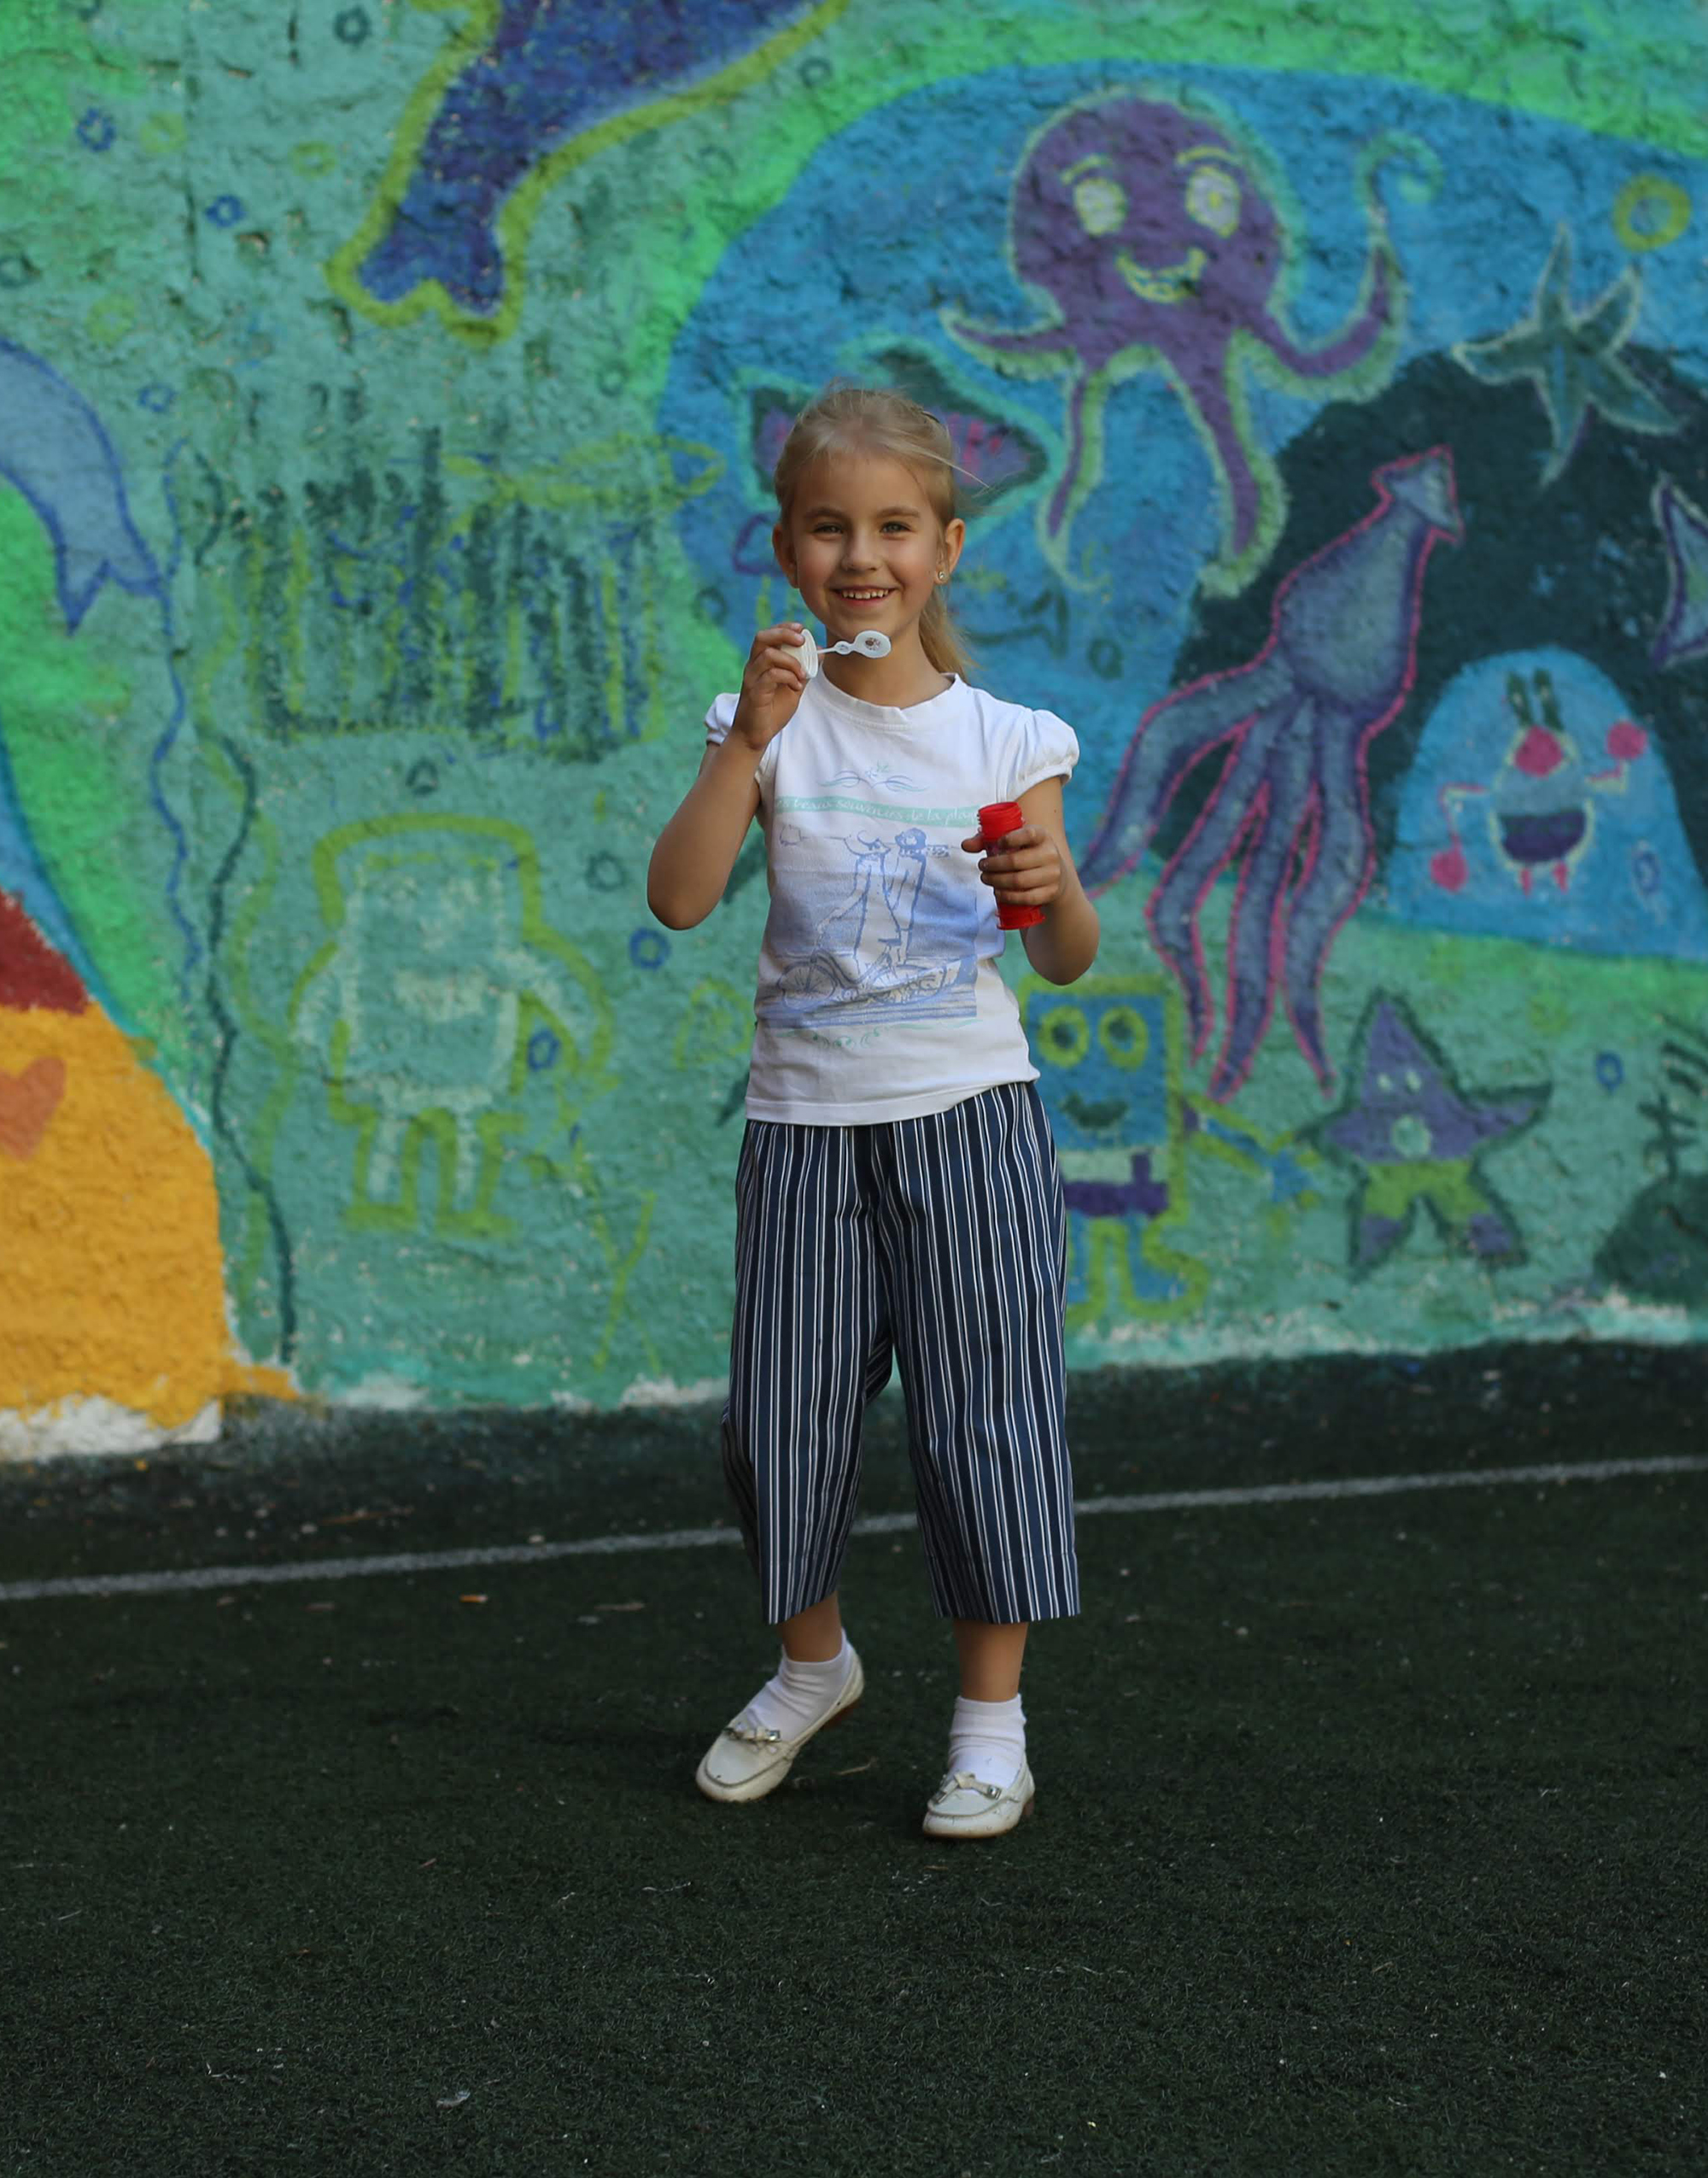 Вязание крючком для детей: модели схемы бесплатно - зеленые летние брюки для девочки 3 лет